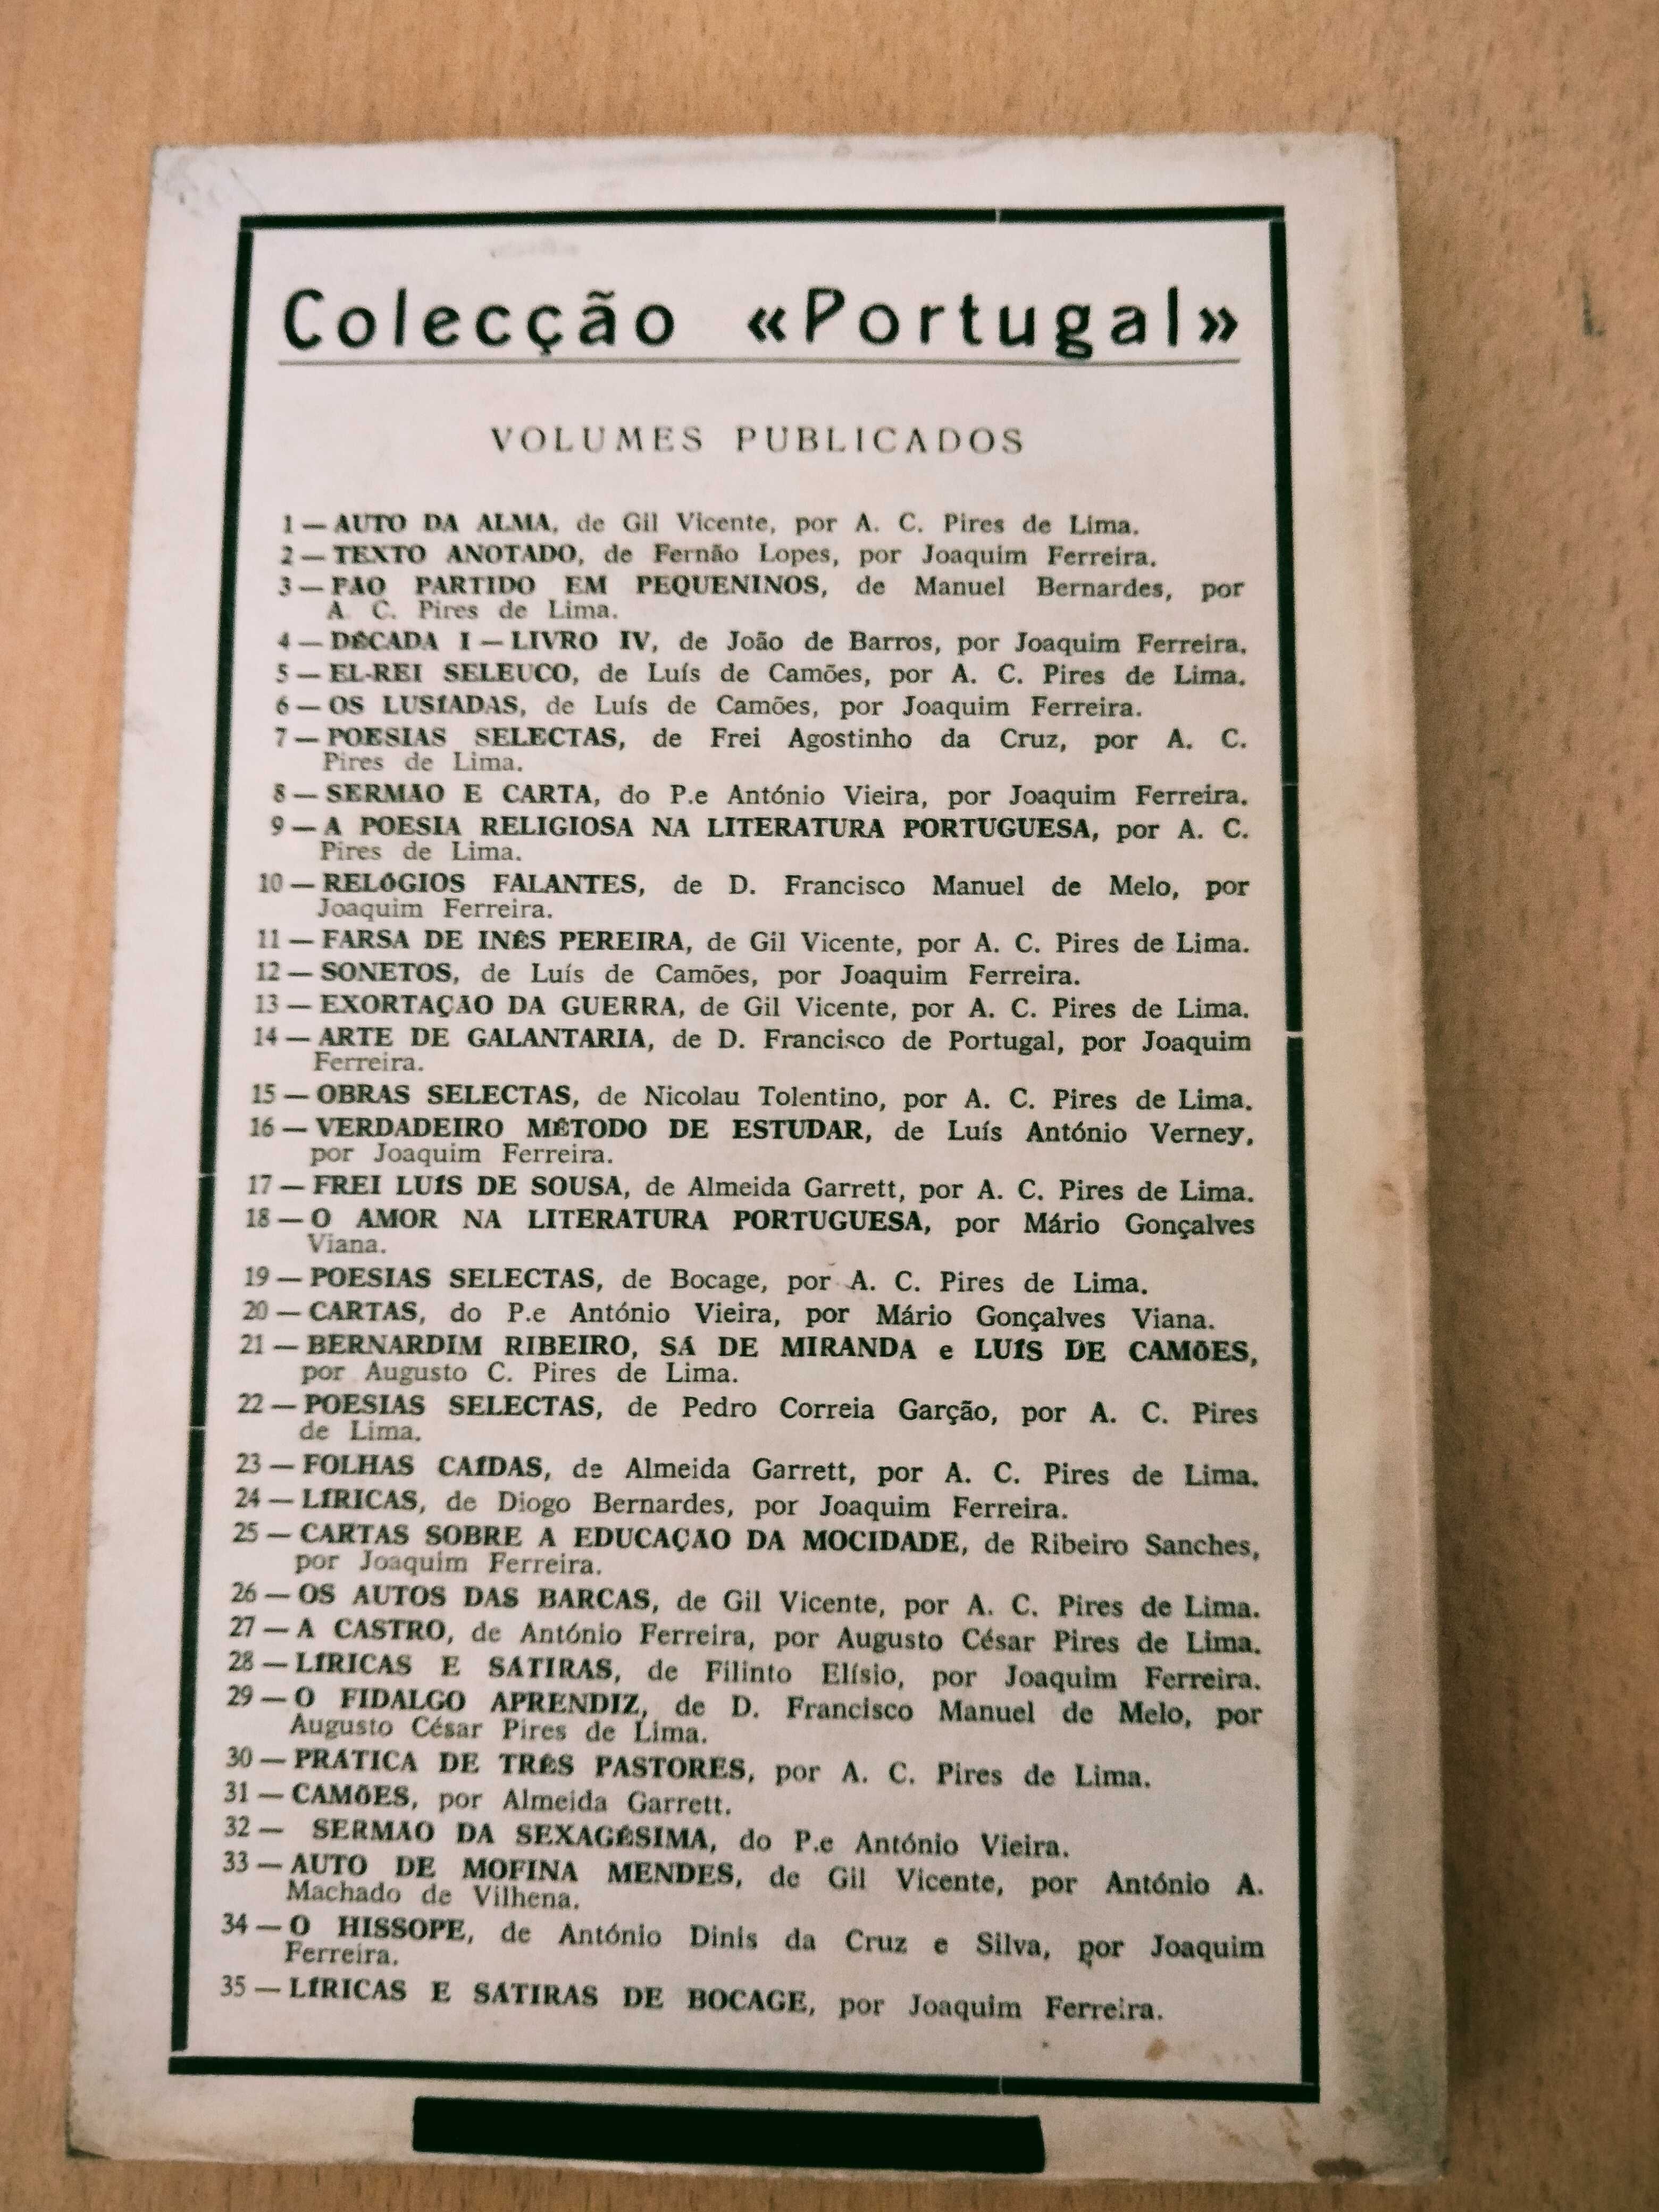 A Poesia Religiosa na Literatura Portuguesa - Augusto C. Pires de Lima